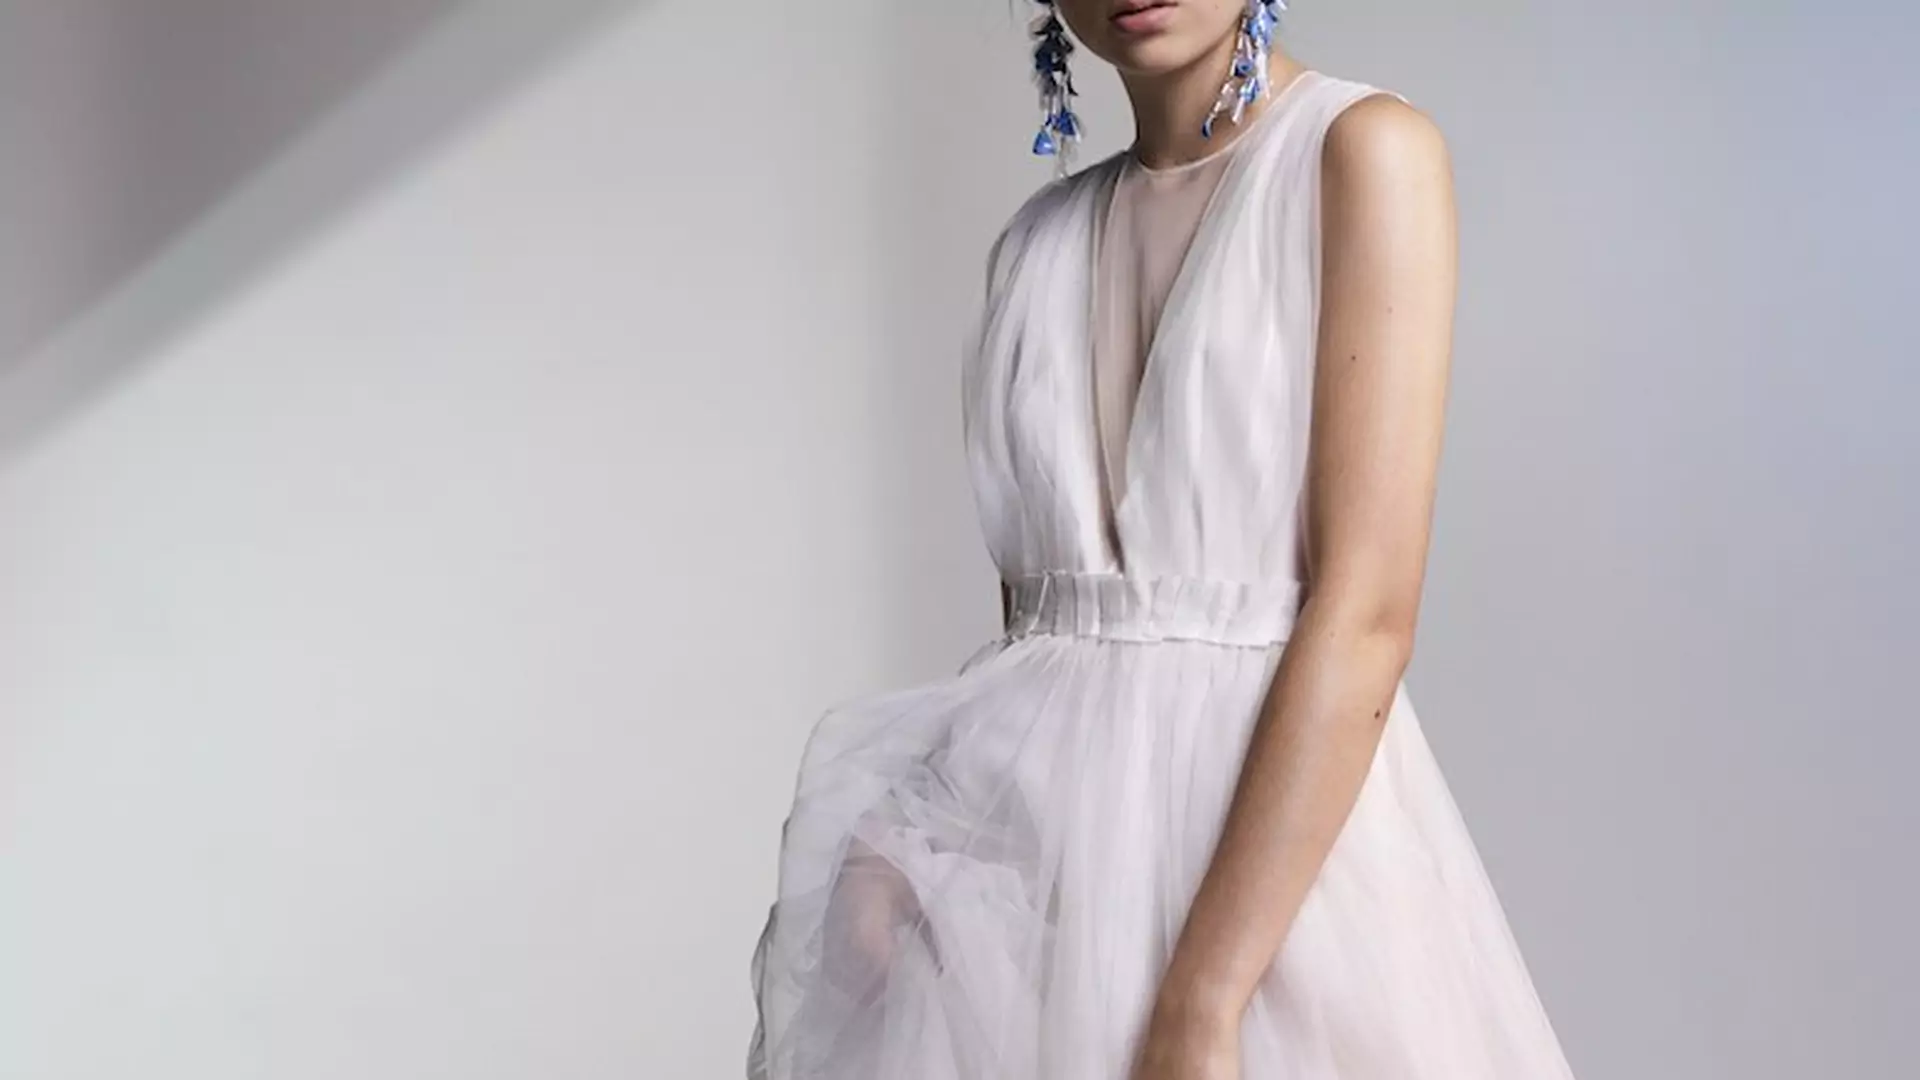 Tania i ekologiczna (!) suknia ślubna z nowej kolekcji H&M: zainteresuje nie tylko księżniczki